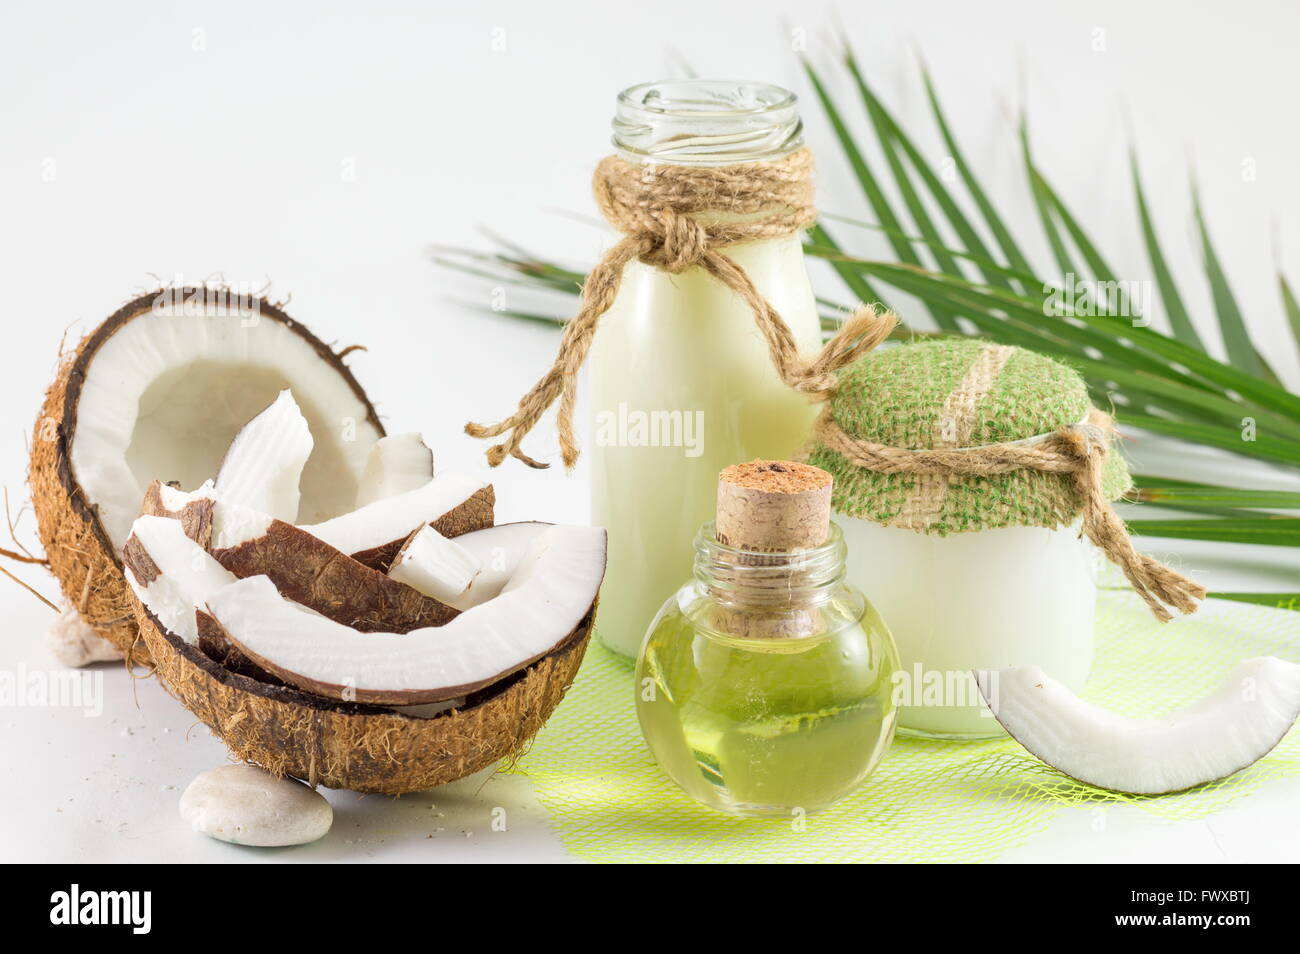 Coconut essential oil Stock Photo by ©matka_Wariatka 25342349